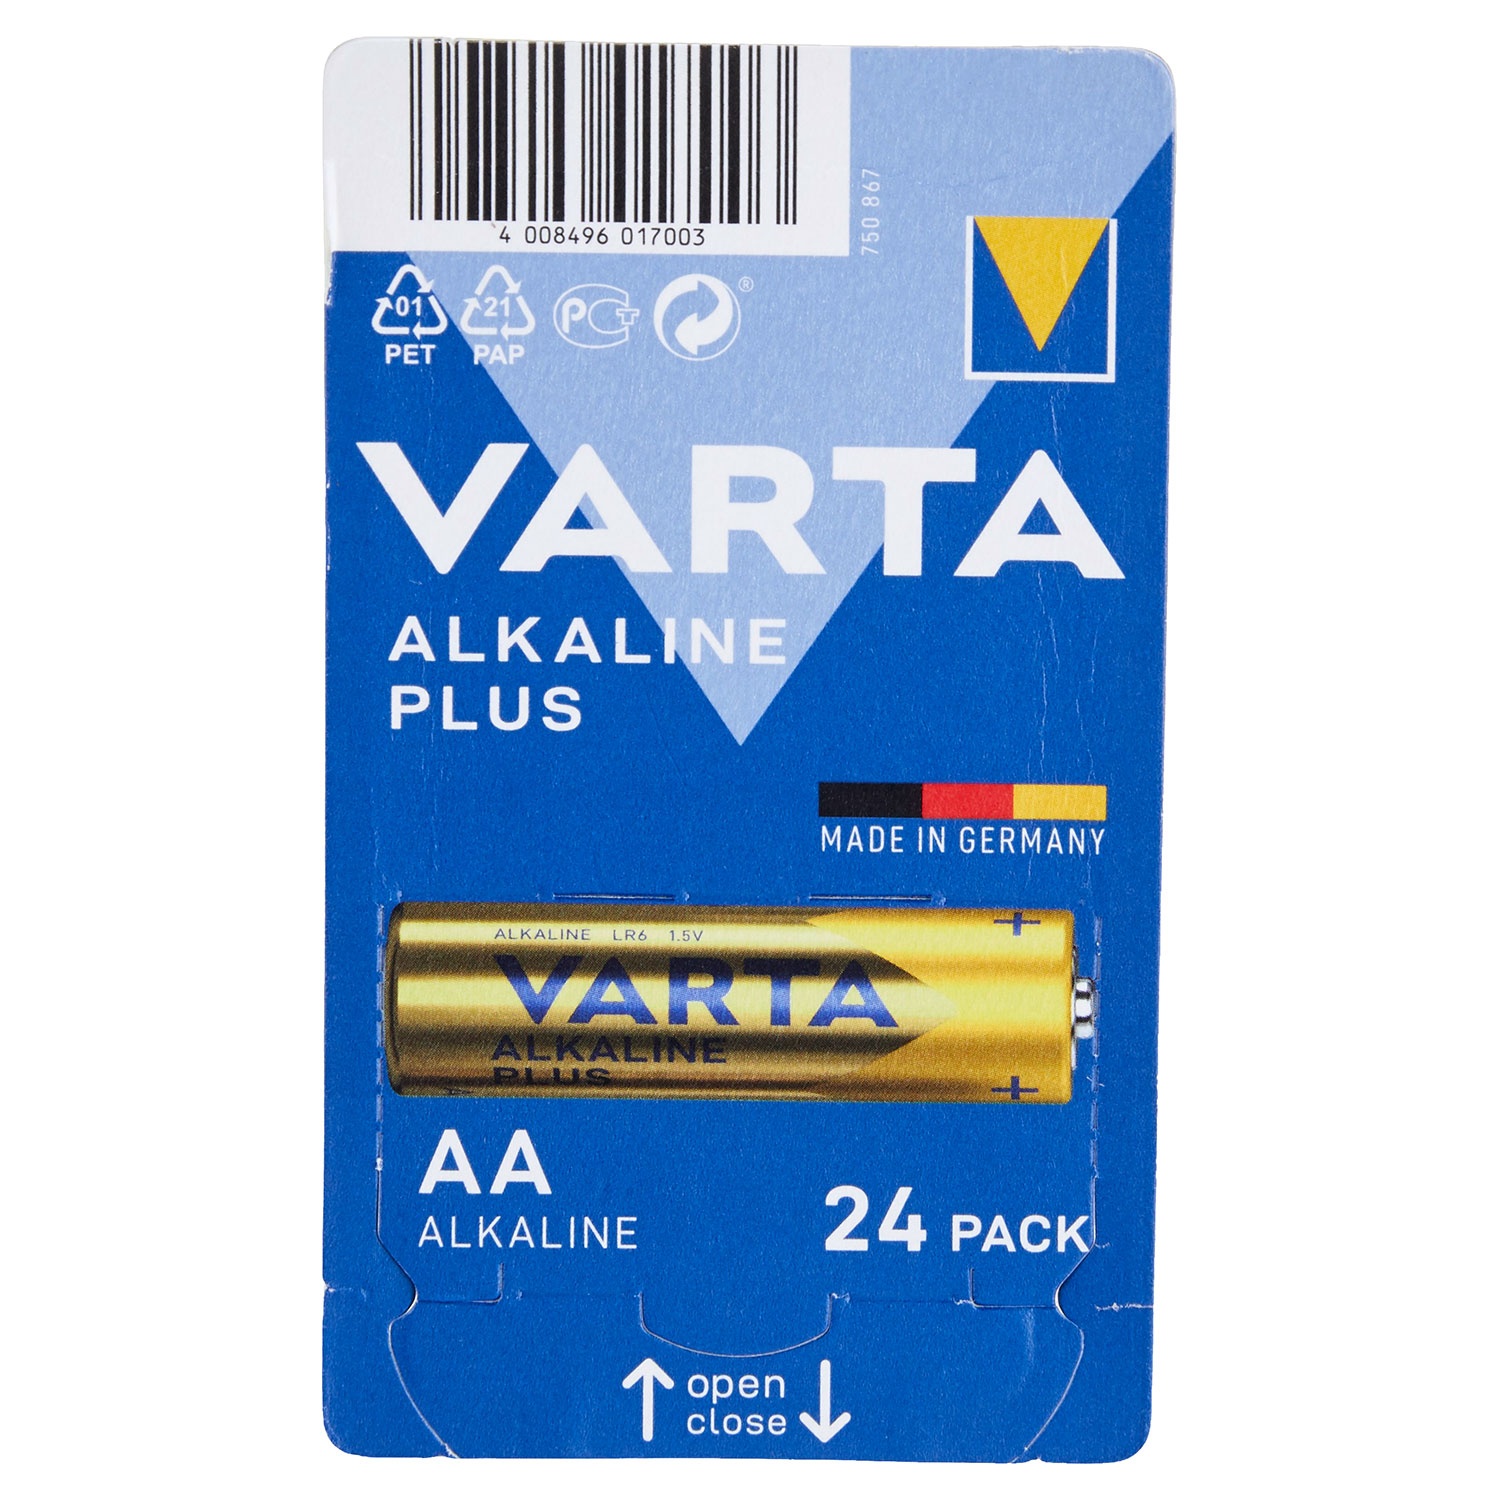 VARTA Alkaline-Batterien